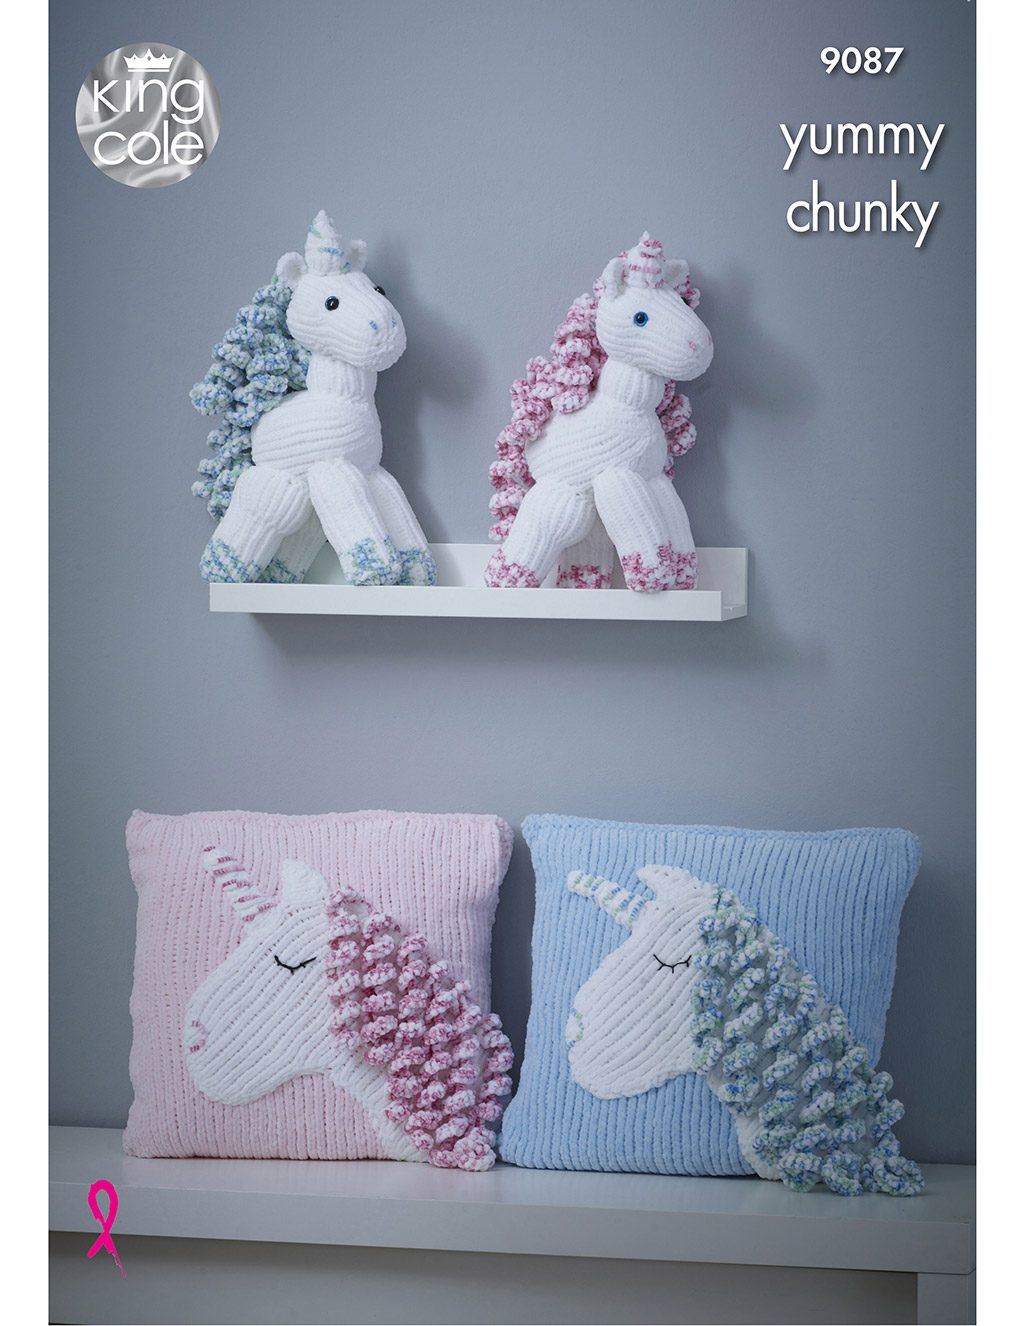 King Cole Yummy knitting pattern (9087) unicorn and cushion